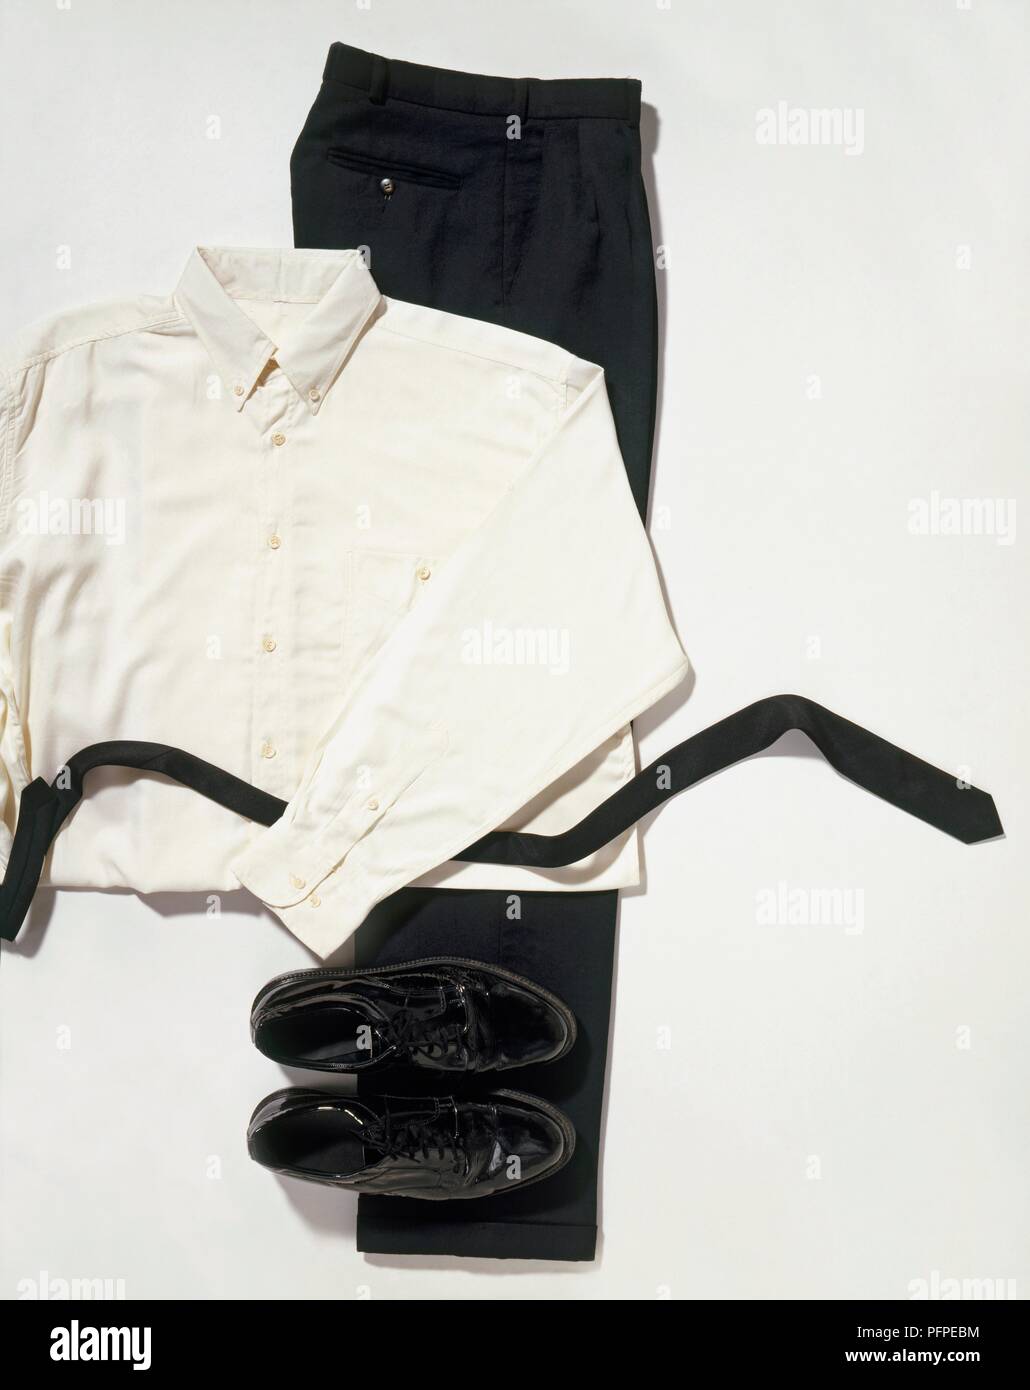 Los hombres de camisa blanca, pantalón negro, zapatos y cinturón Fotografía de - Alamy